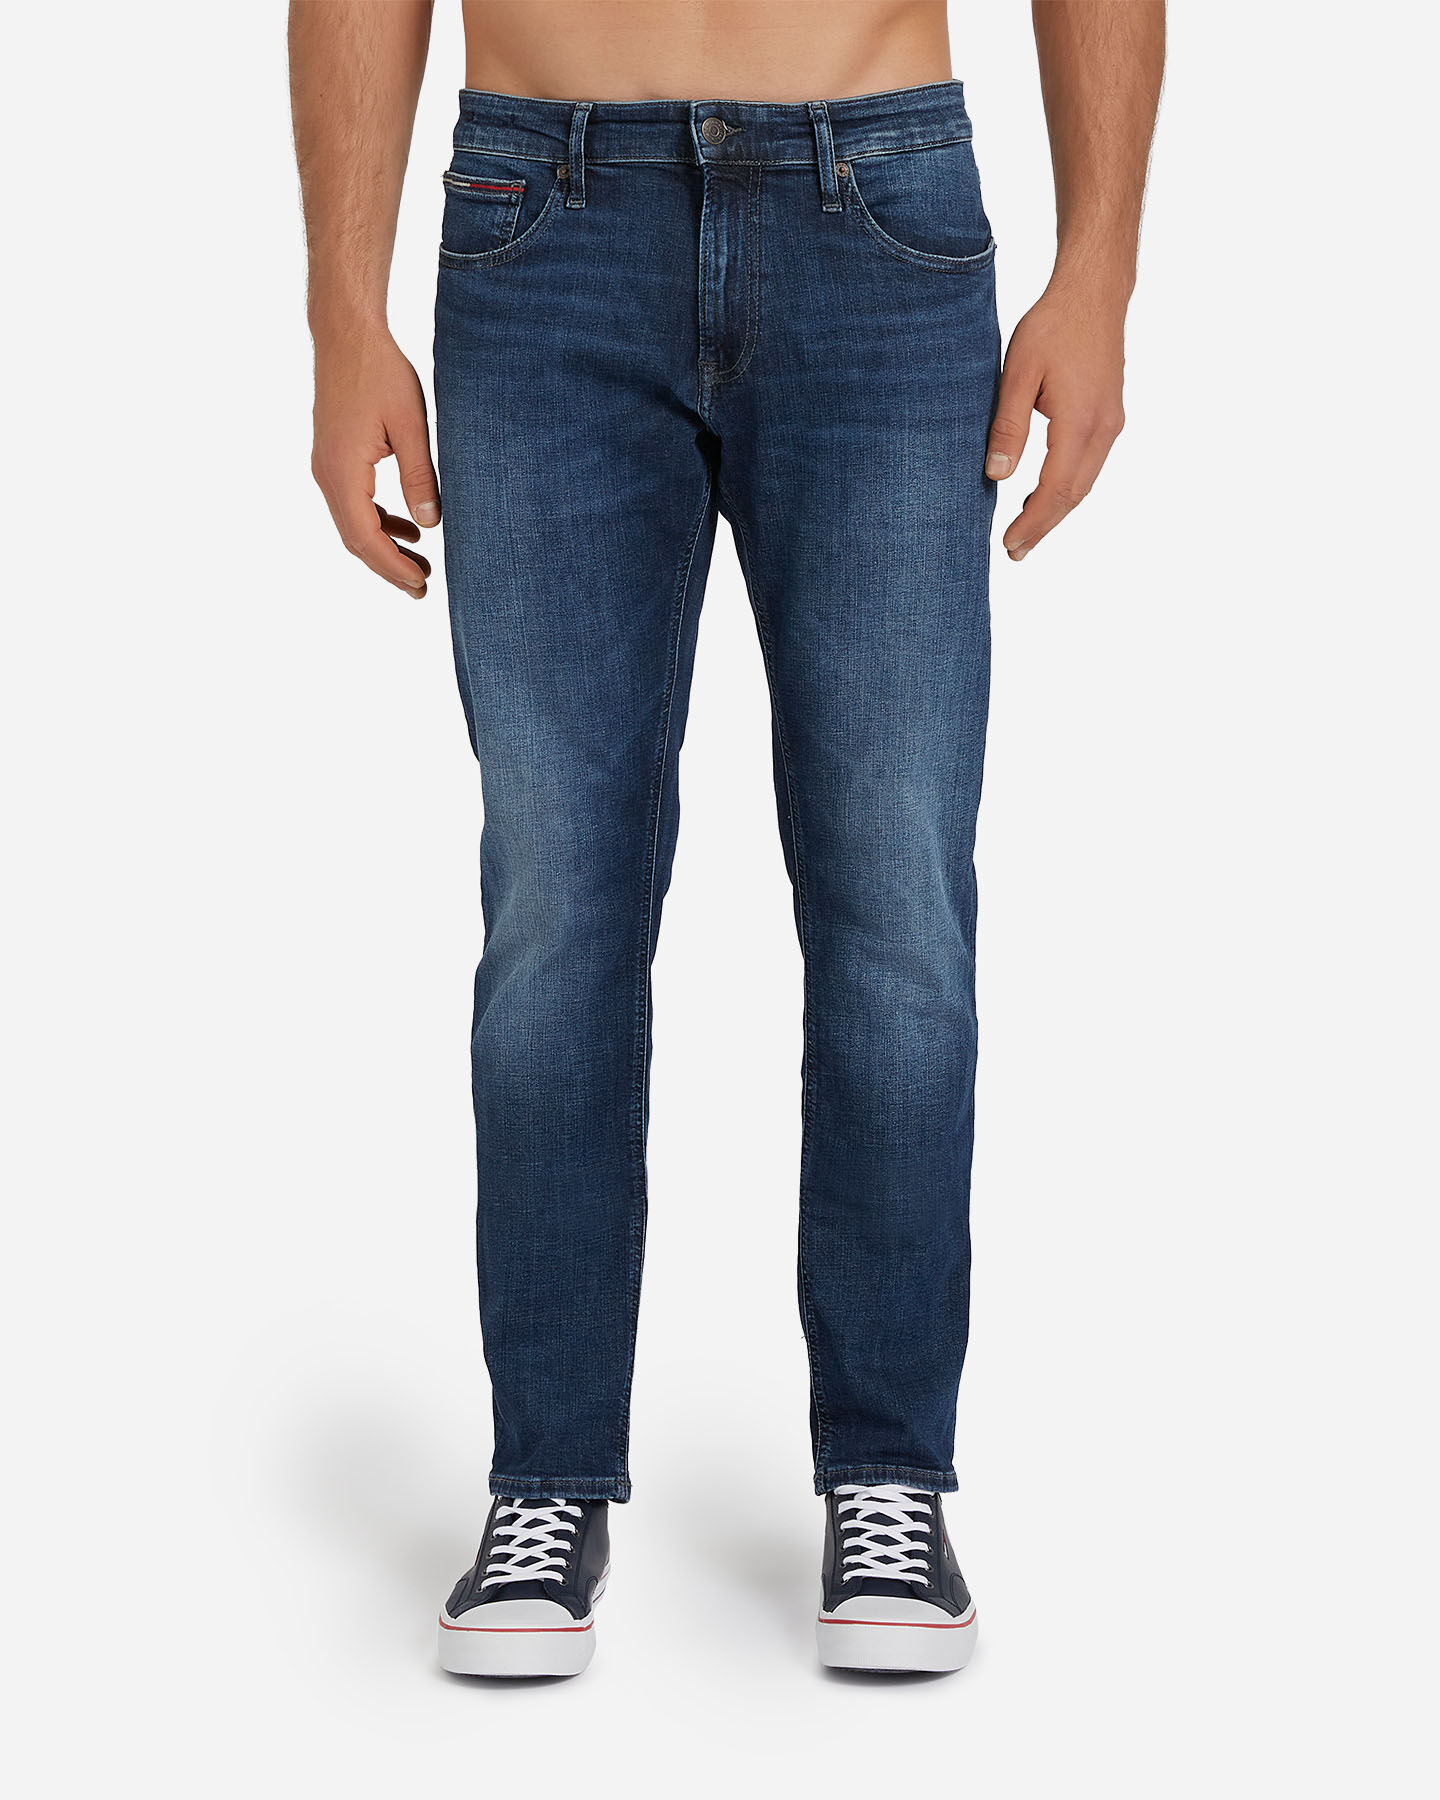 Jeans SCANTON ABOUT YOU Uomo Abbigliamento Pantaloni e jeans Jeans Jeans slim & sigaretta 